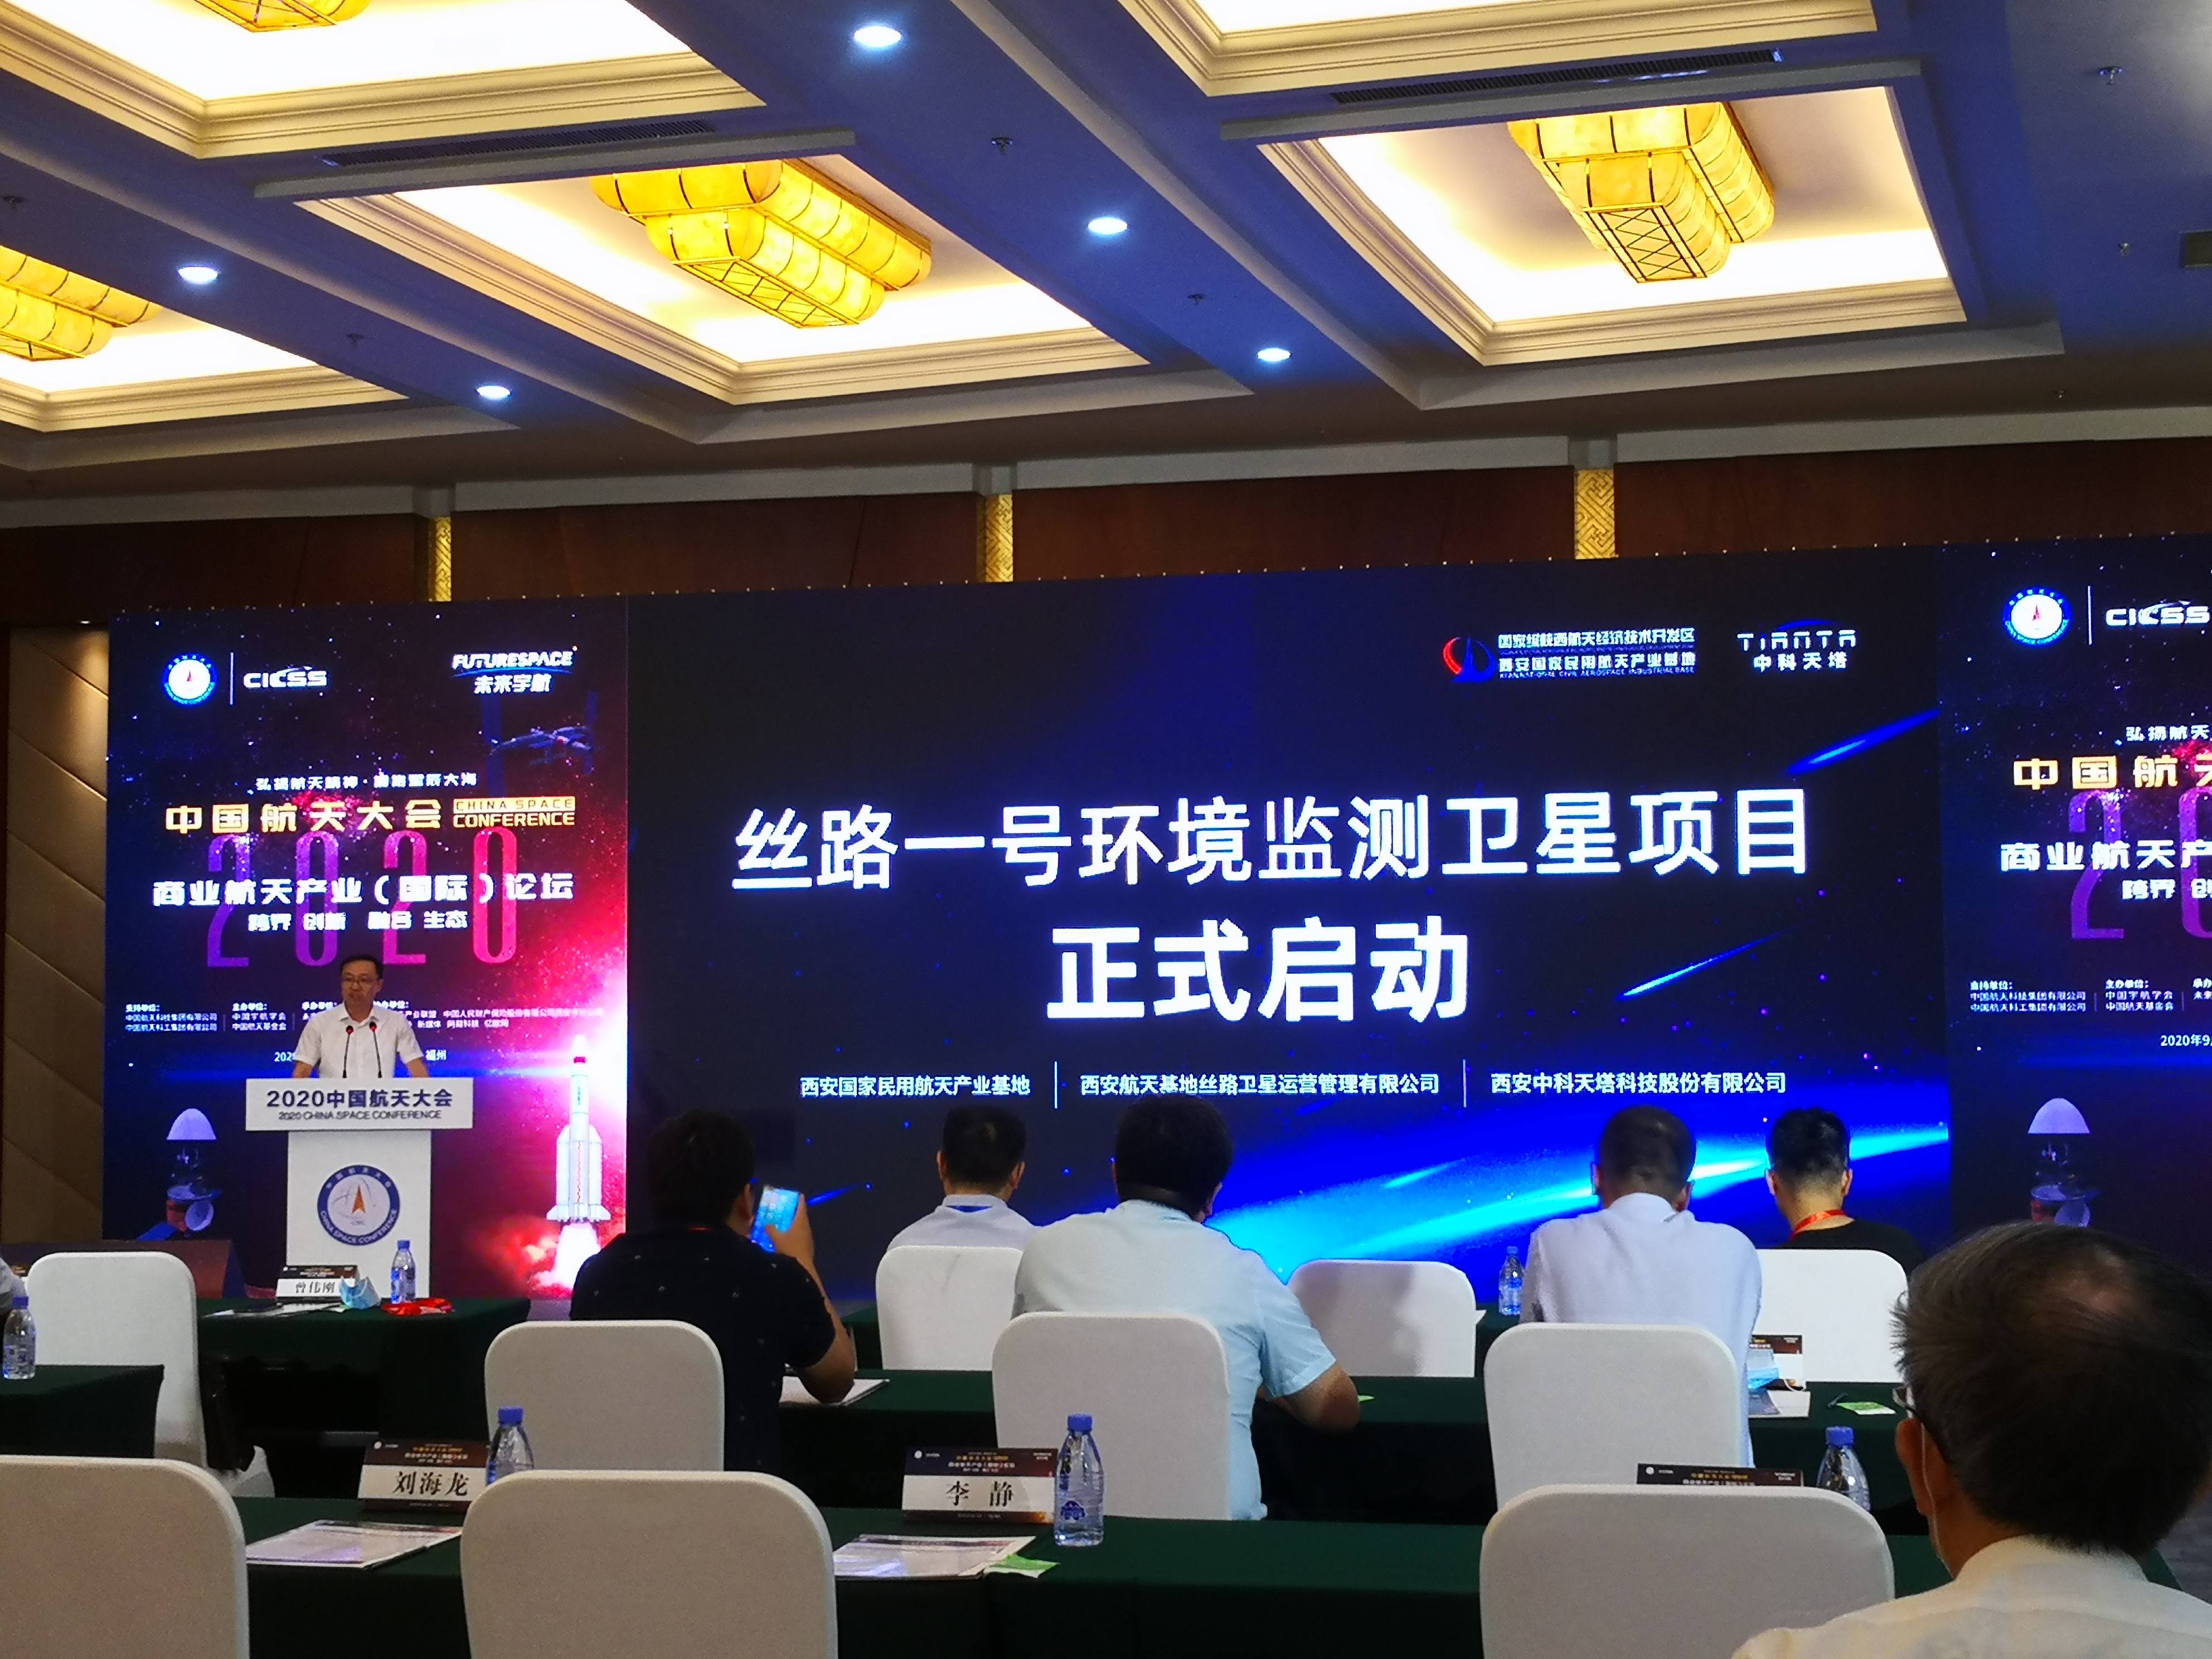 陕西启动全国首个雾霾监测商业卫星“丝路一号”项目建设 2021年发射首颗卫星